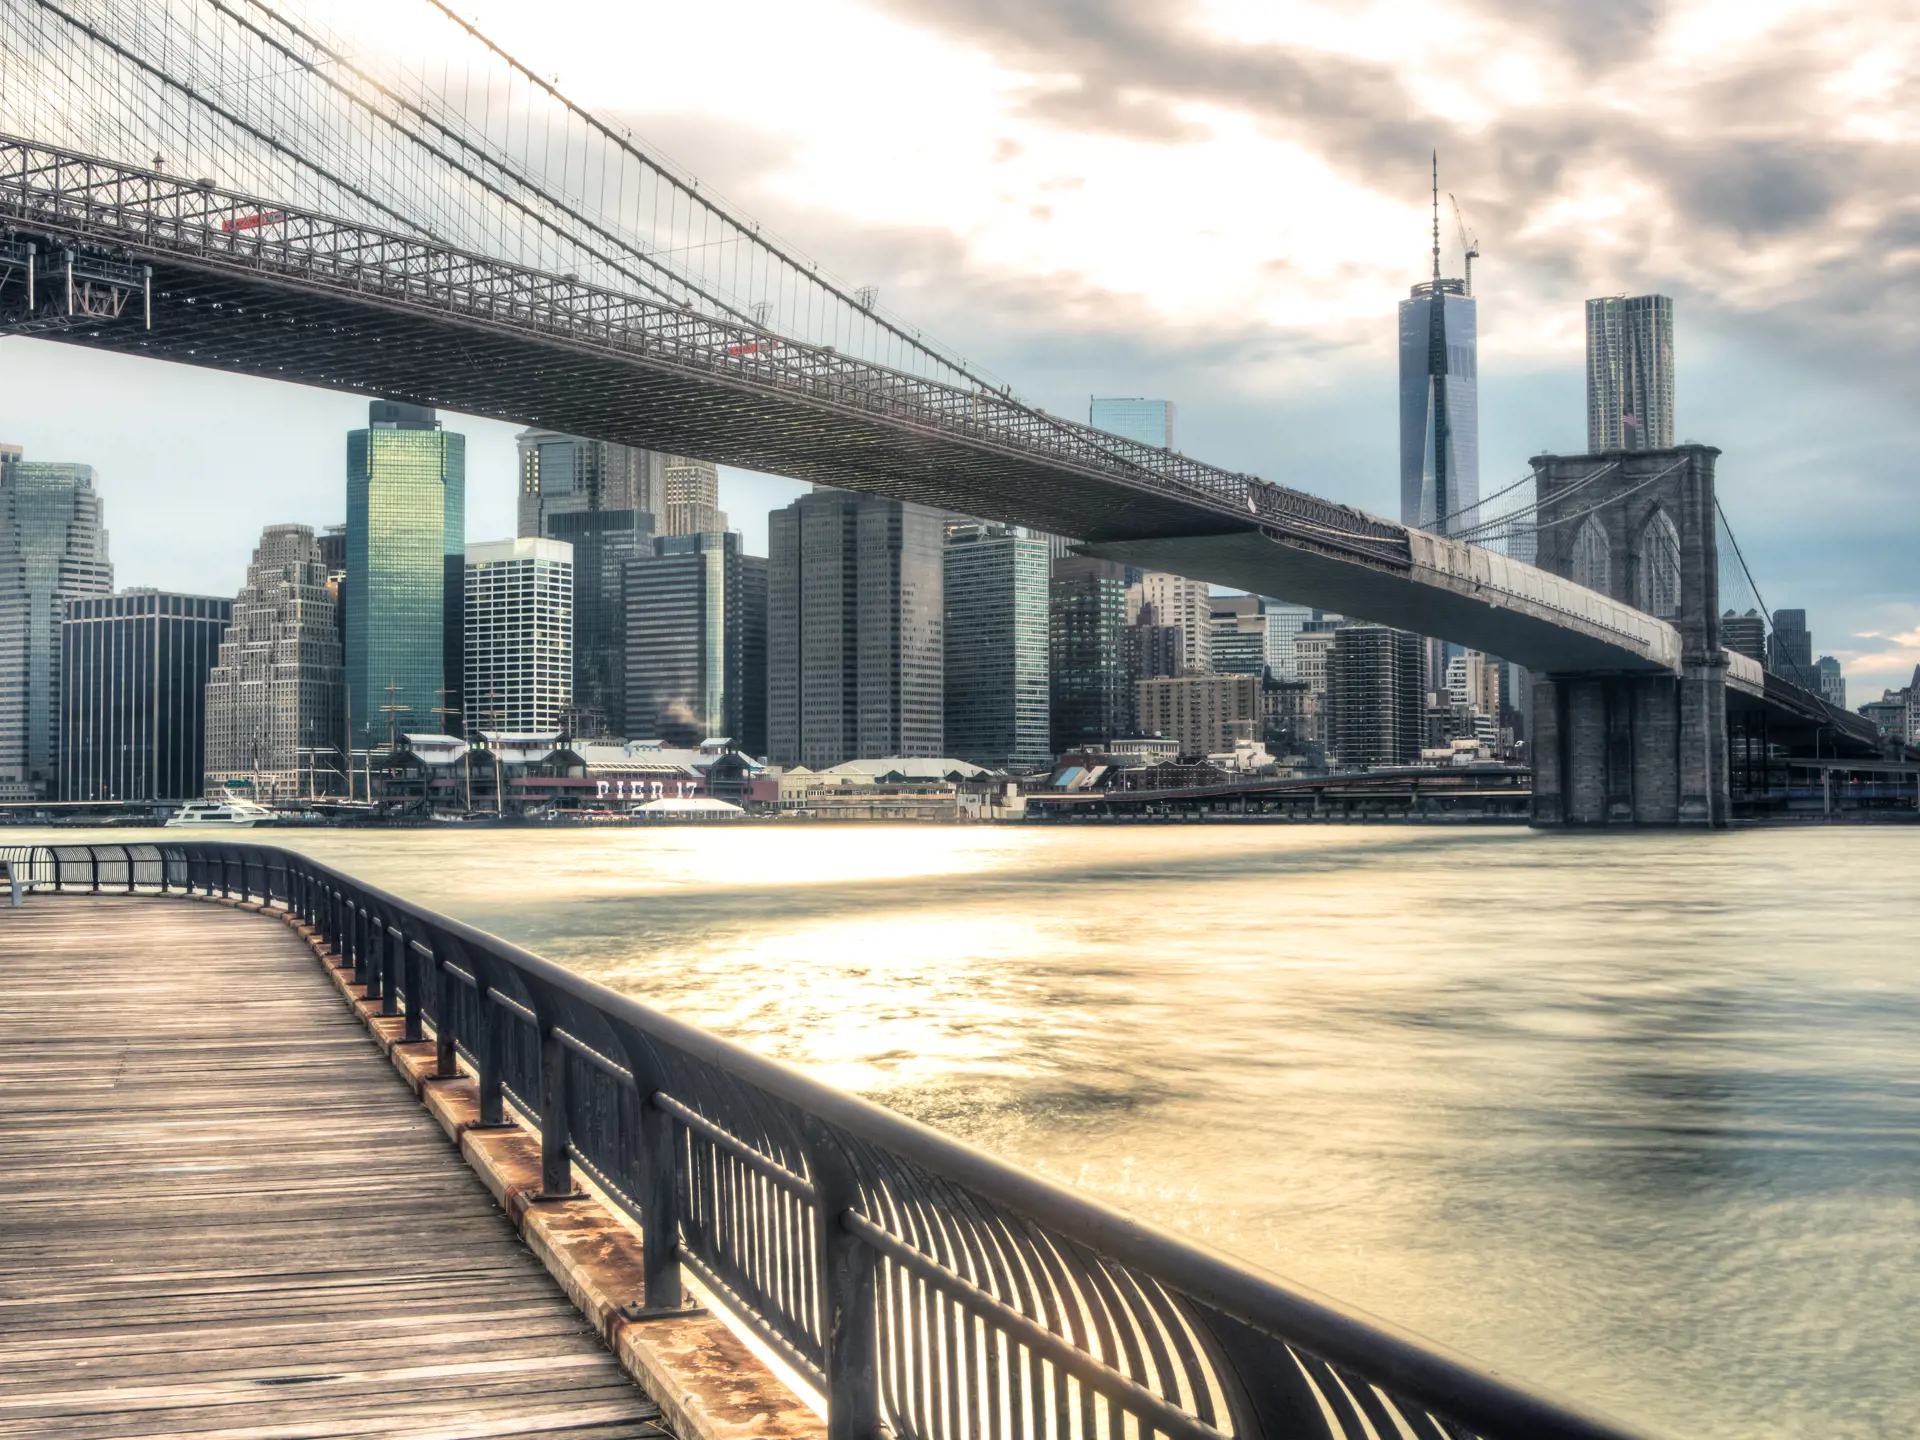 NEW YORK - den historiske Brooklyn Bridge var Verdens længste hængebro da den stod færdig i 1883. I dag er det en af byens mest kendte bygningsværker, Check Point Travel